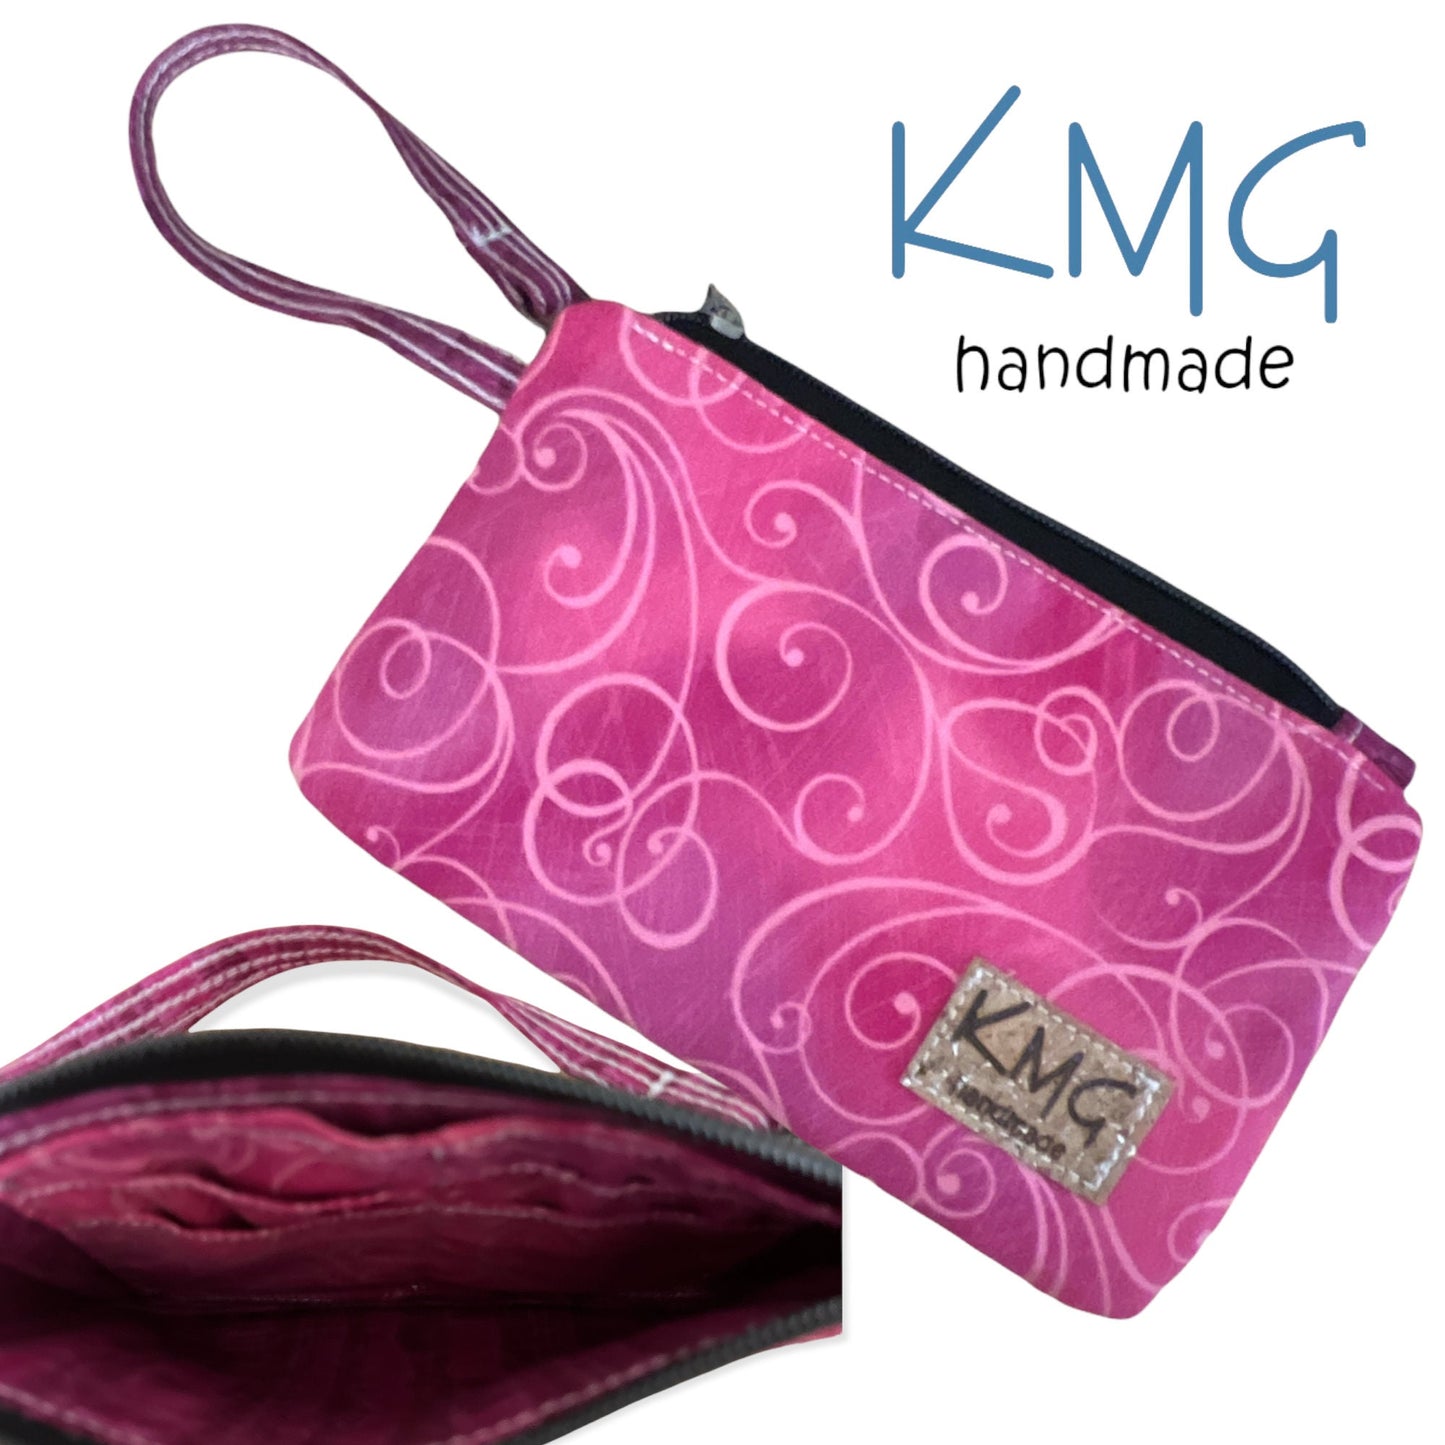 KMGhandmade Original Clip & Zip Wristlets - Group A